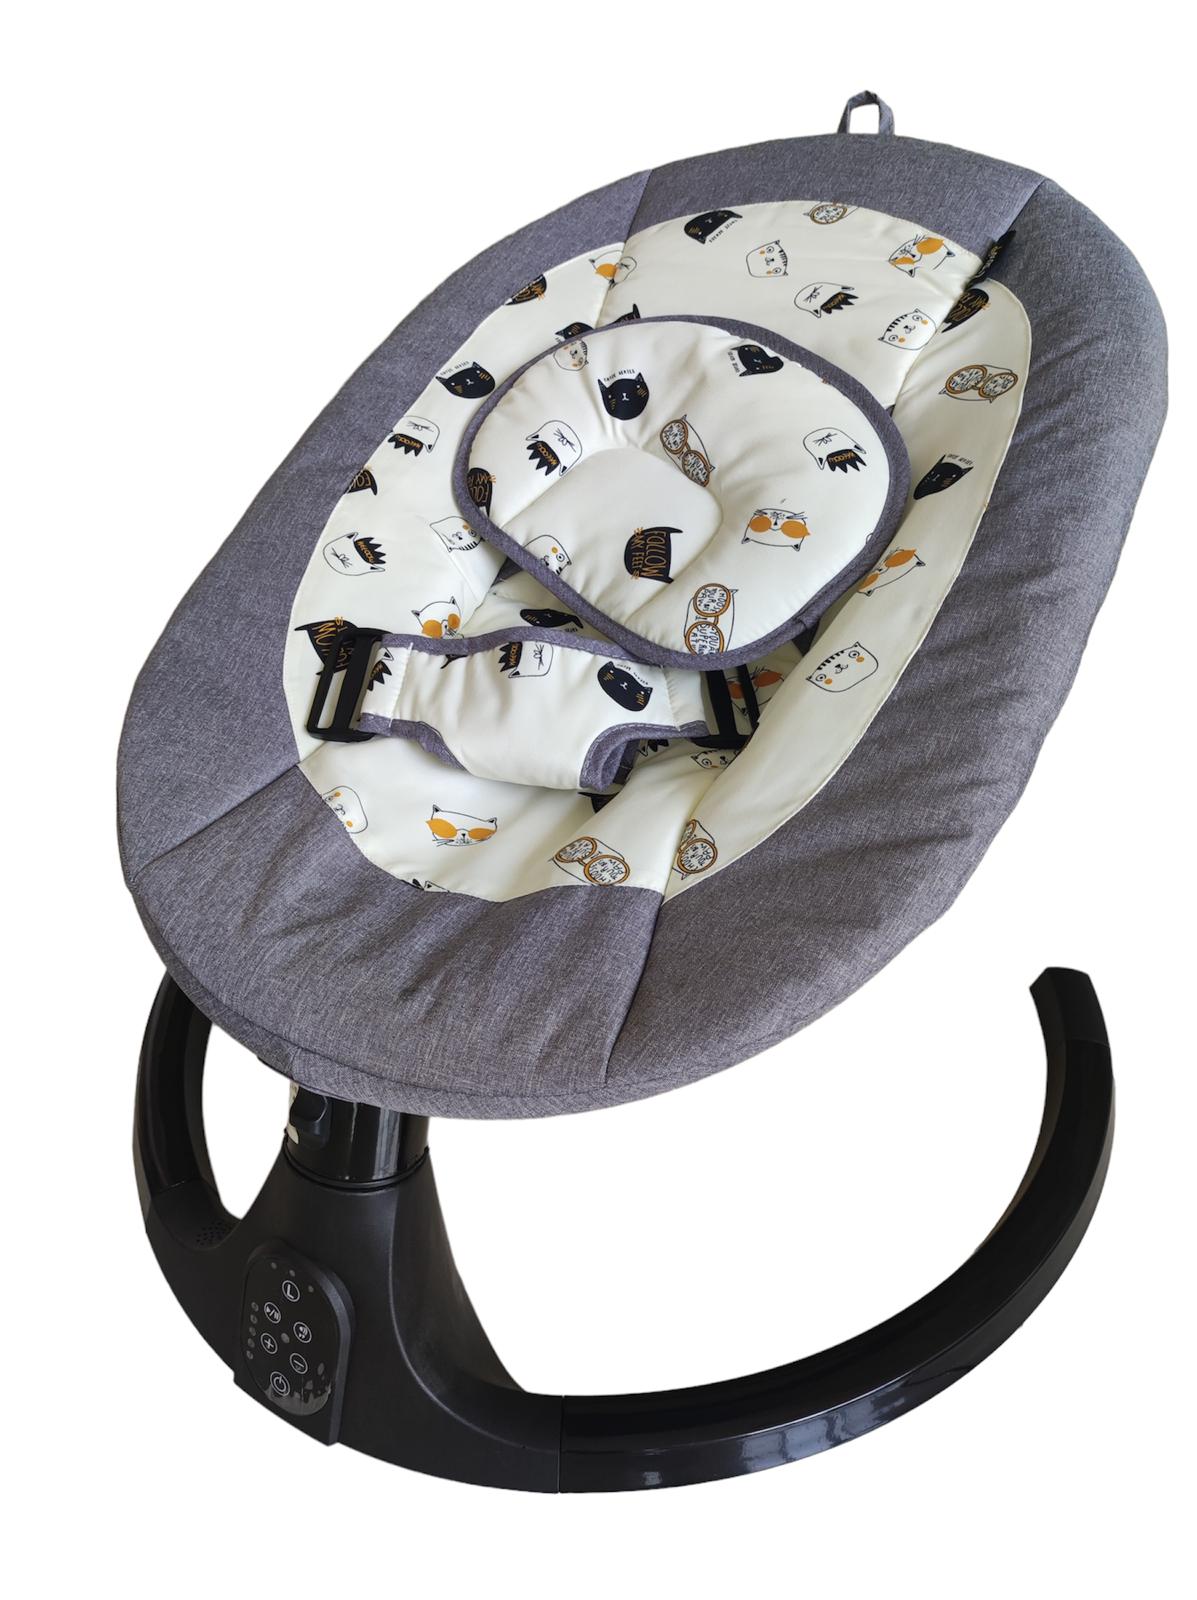 Balansoar electric pentru bebelusi, cu acoperis rabatabil si plasa de protectie, telecomanda, jucarii si sunete, A4